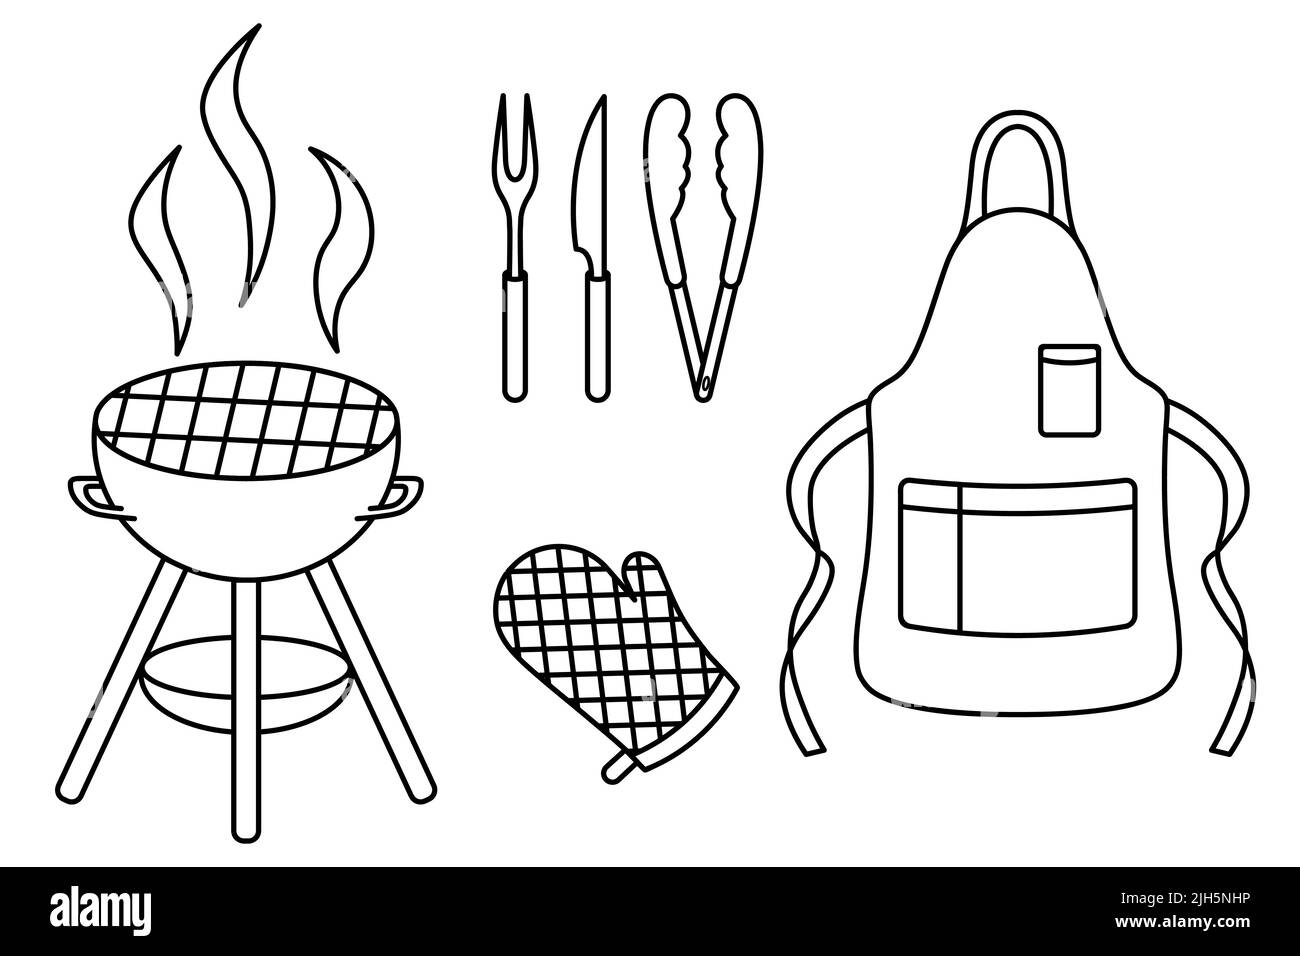 Ein Satz von Werkzeugen und Overalls zum Kochen Grill. Skizze. Vektorgrafik. Farbgebung. Umriss auf isoliertem Hintergrund. Doodle-Stil. Stock Vektor